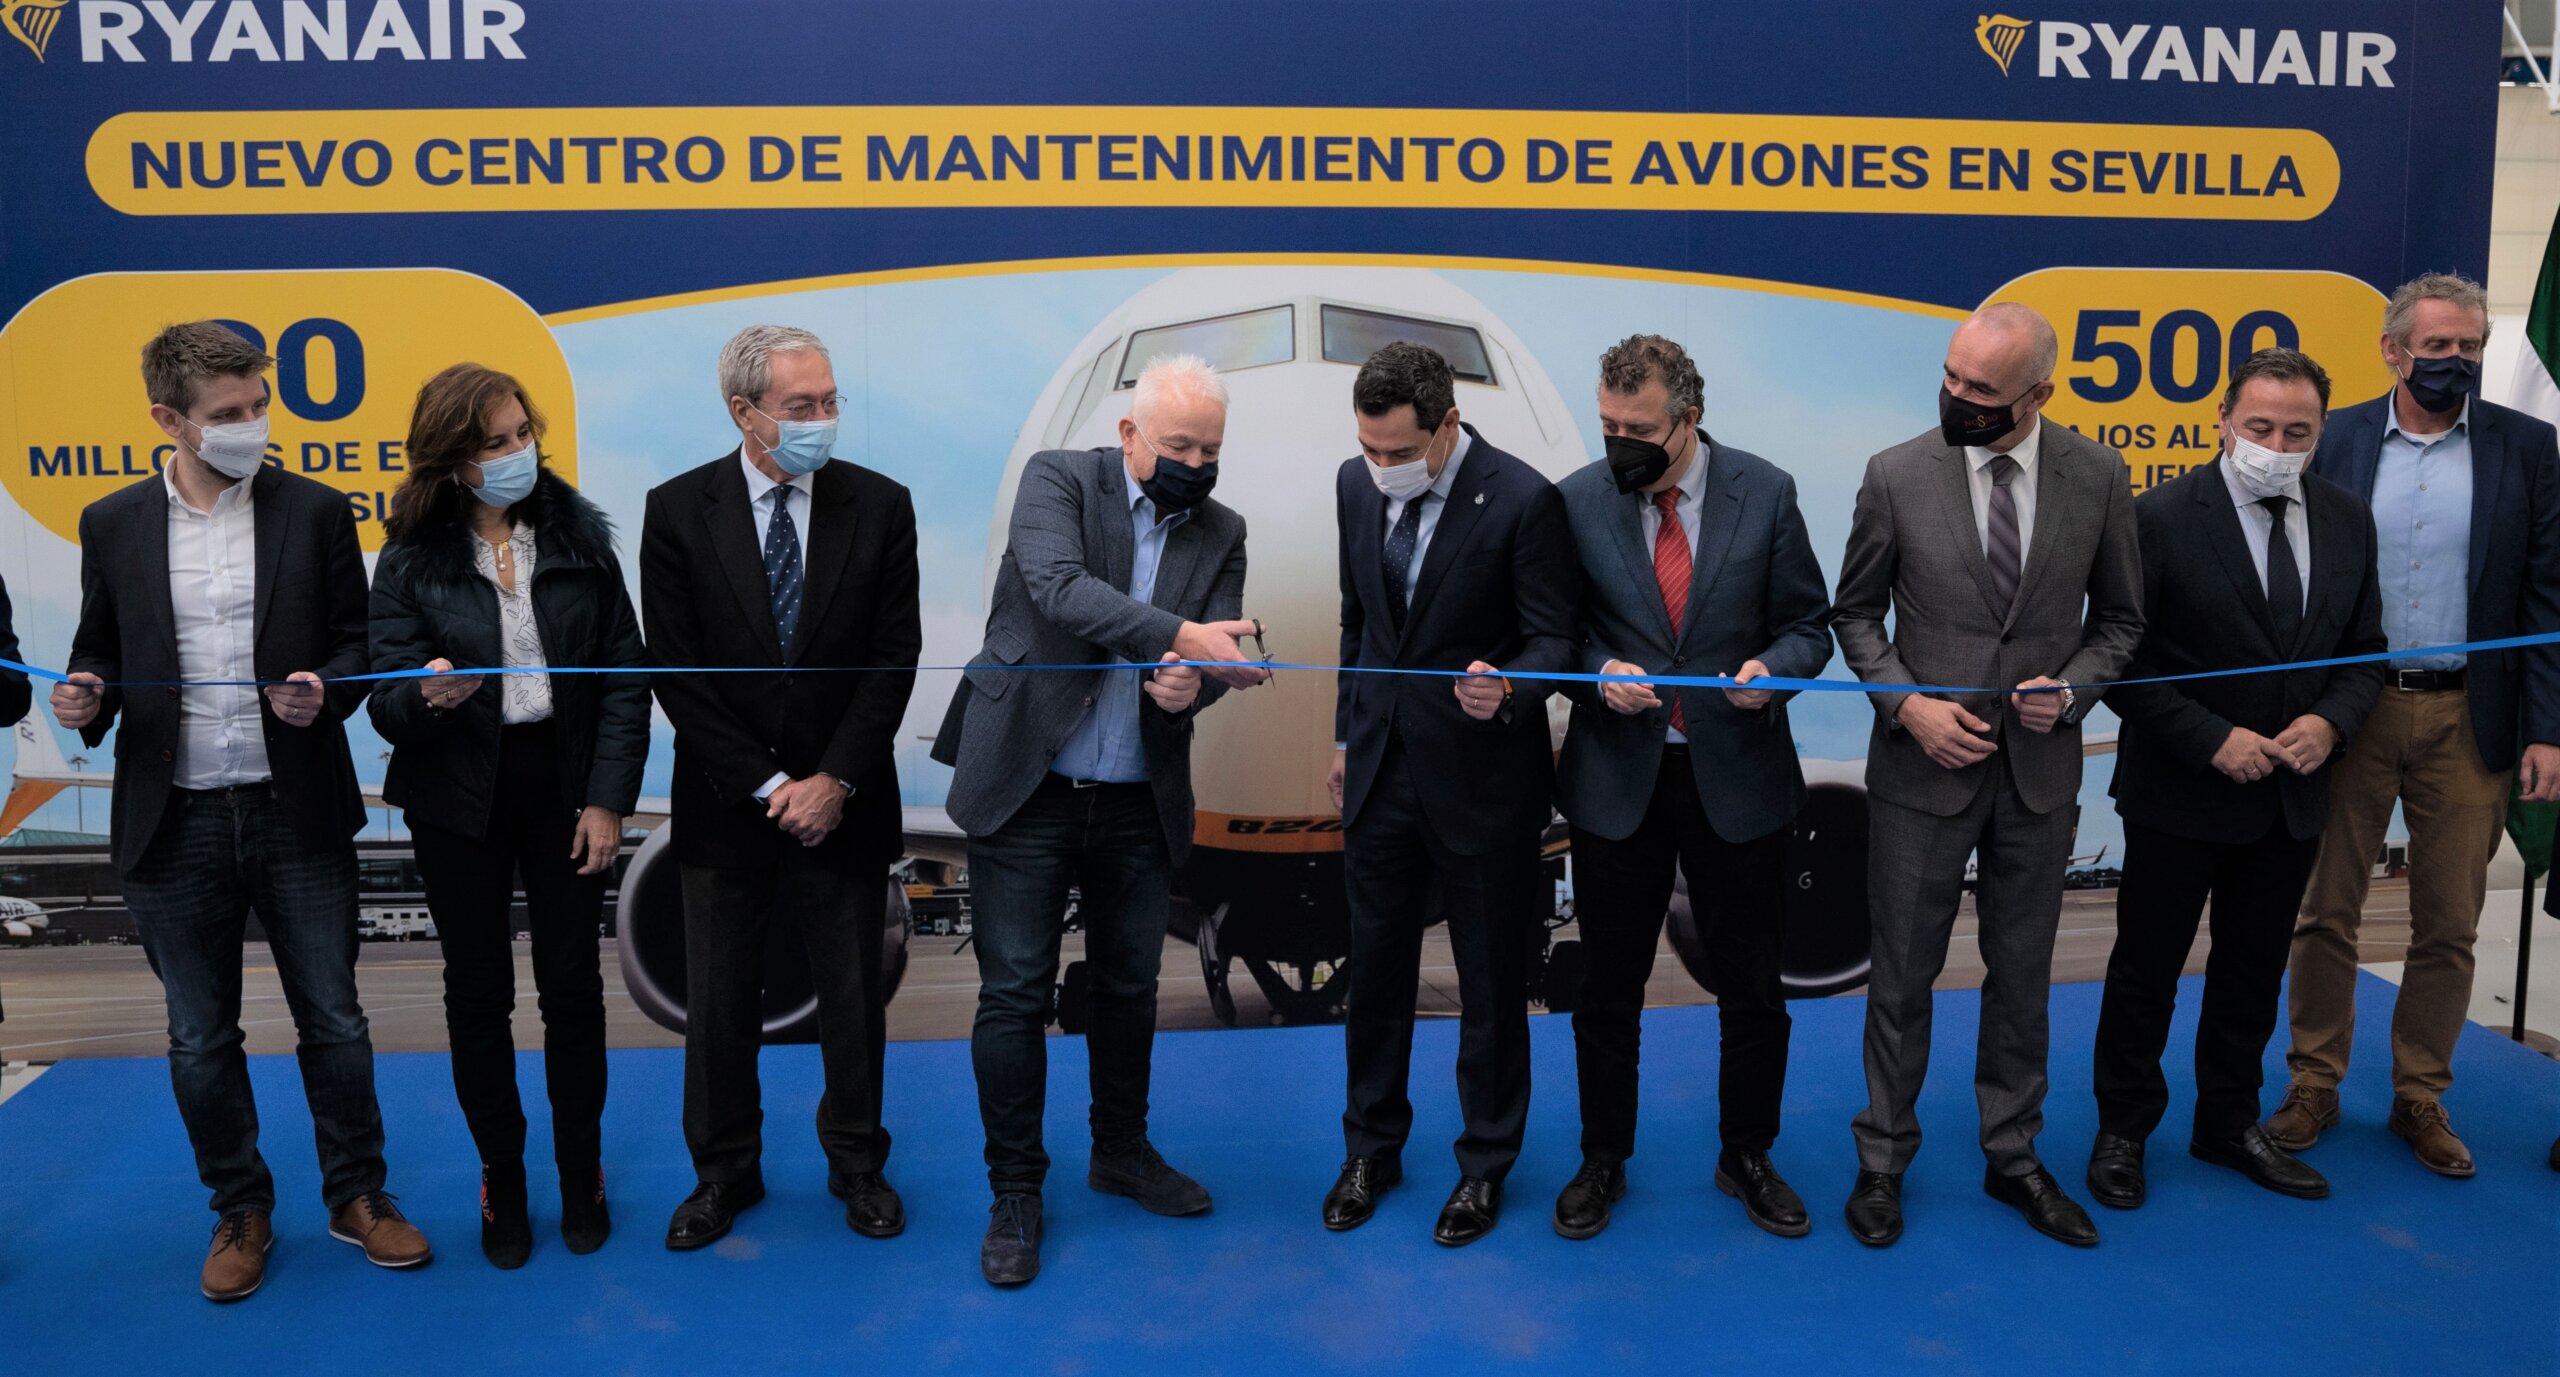 Ryanair Amplia Su Centro De Mantenimiento De Aviones En Sevilla